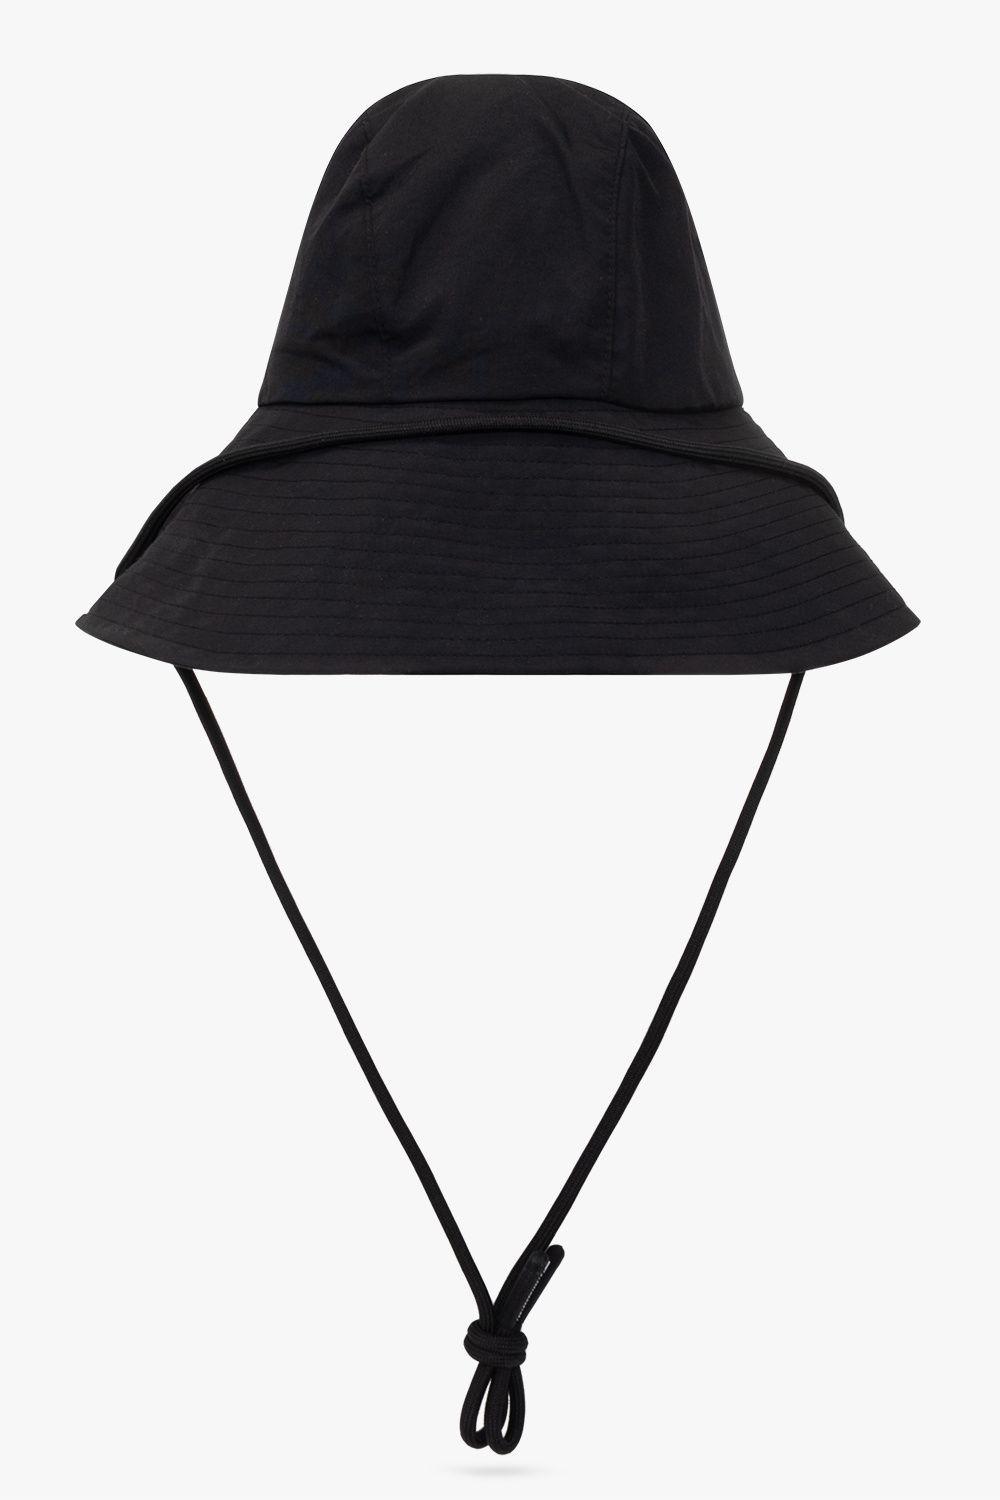 adidas By Stella McCartney Adidas Stella Mccartney Bucket Hat With Logo in  Black